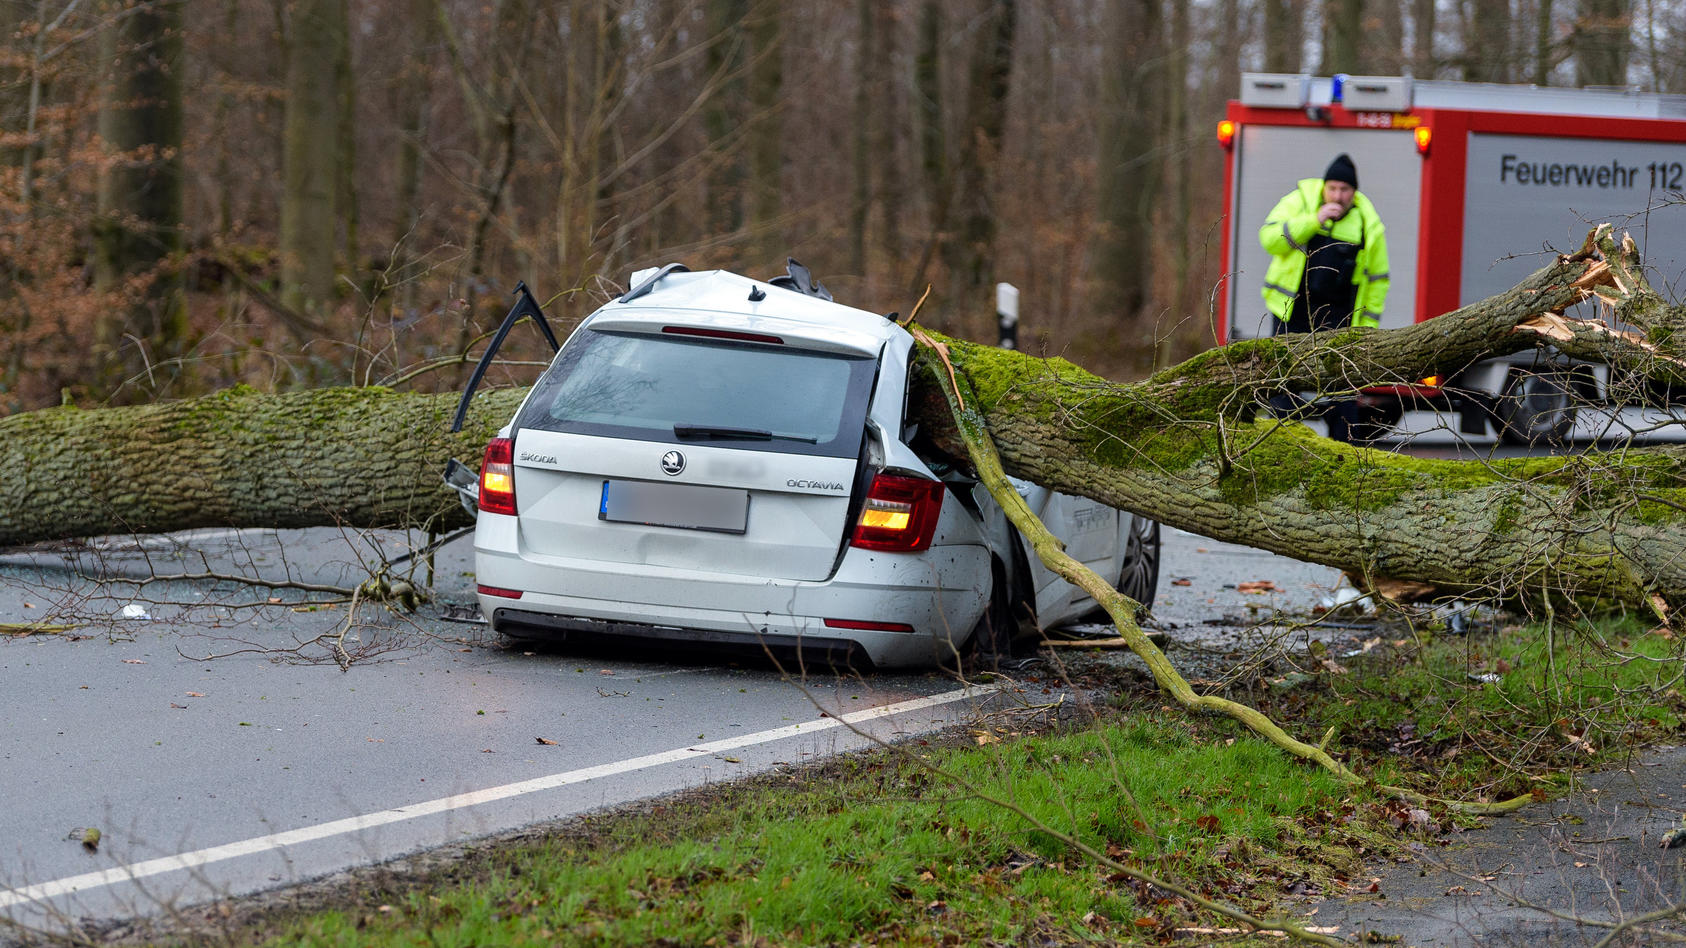 17.02.2022, Niedersachsen, Bad Bevensen: Ein durch den Sturm umgestürzter Baum liegt auf einem Pkw. Der 37-jährige Fahrer wurde dabei tödlich verletzt. Foto: Philipp Schulze/dpa +++ dpa-Bildfunk +++